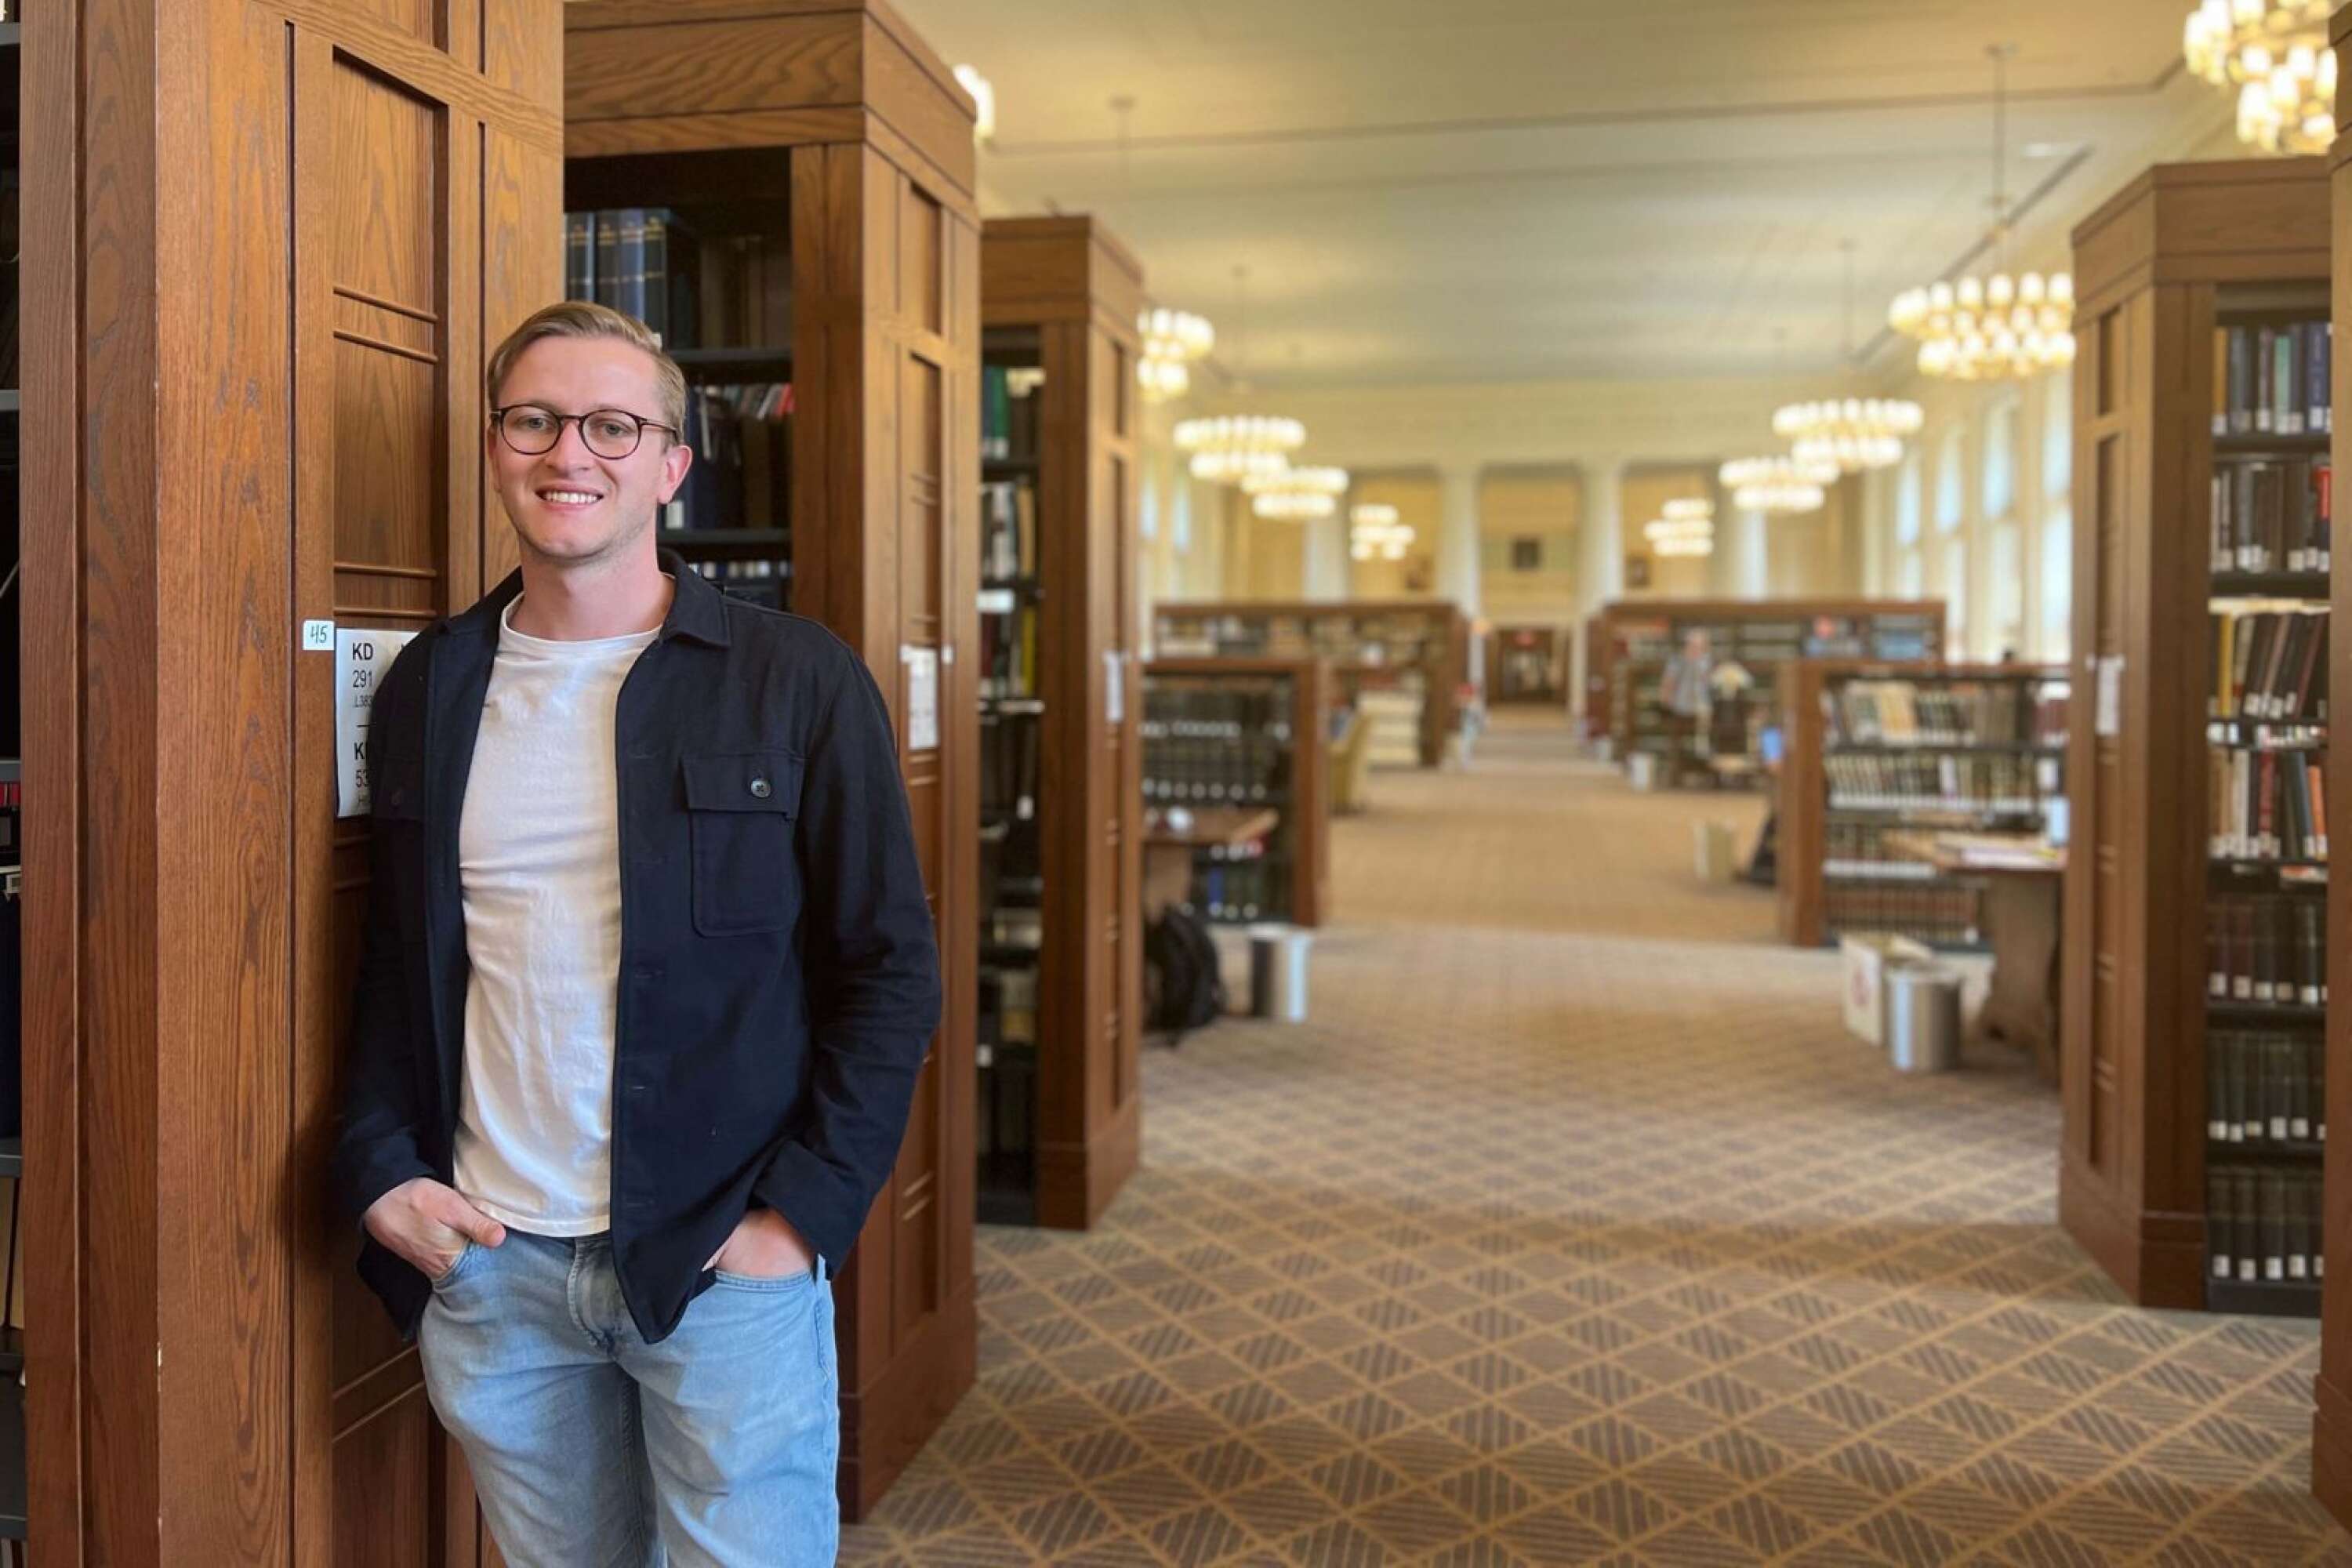 Harvard Law schools bibliotek är en plats där Nils Ivars spenderar mycket tid.